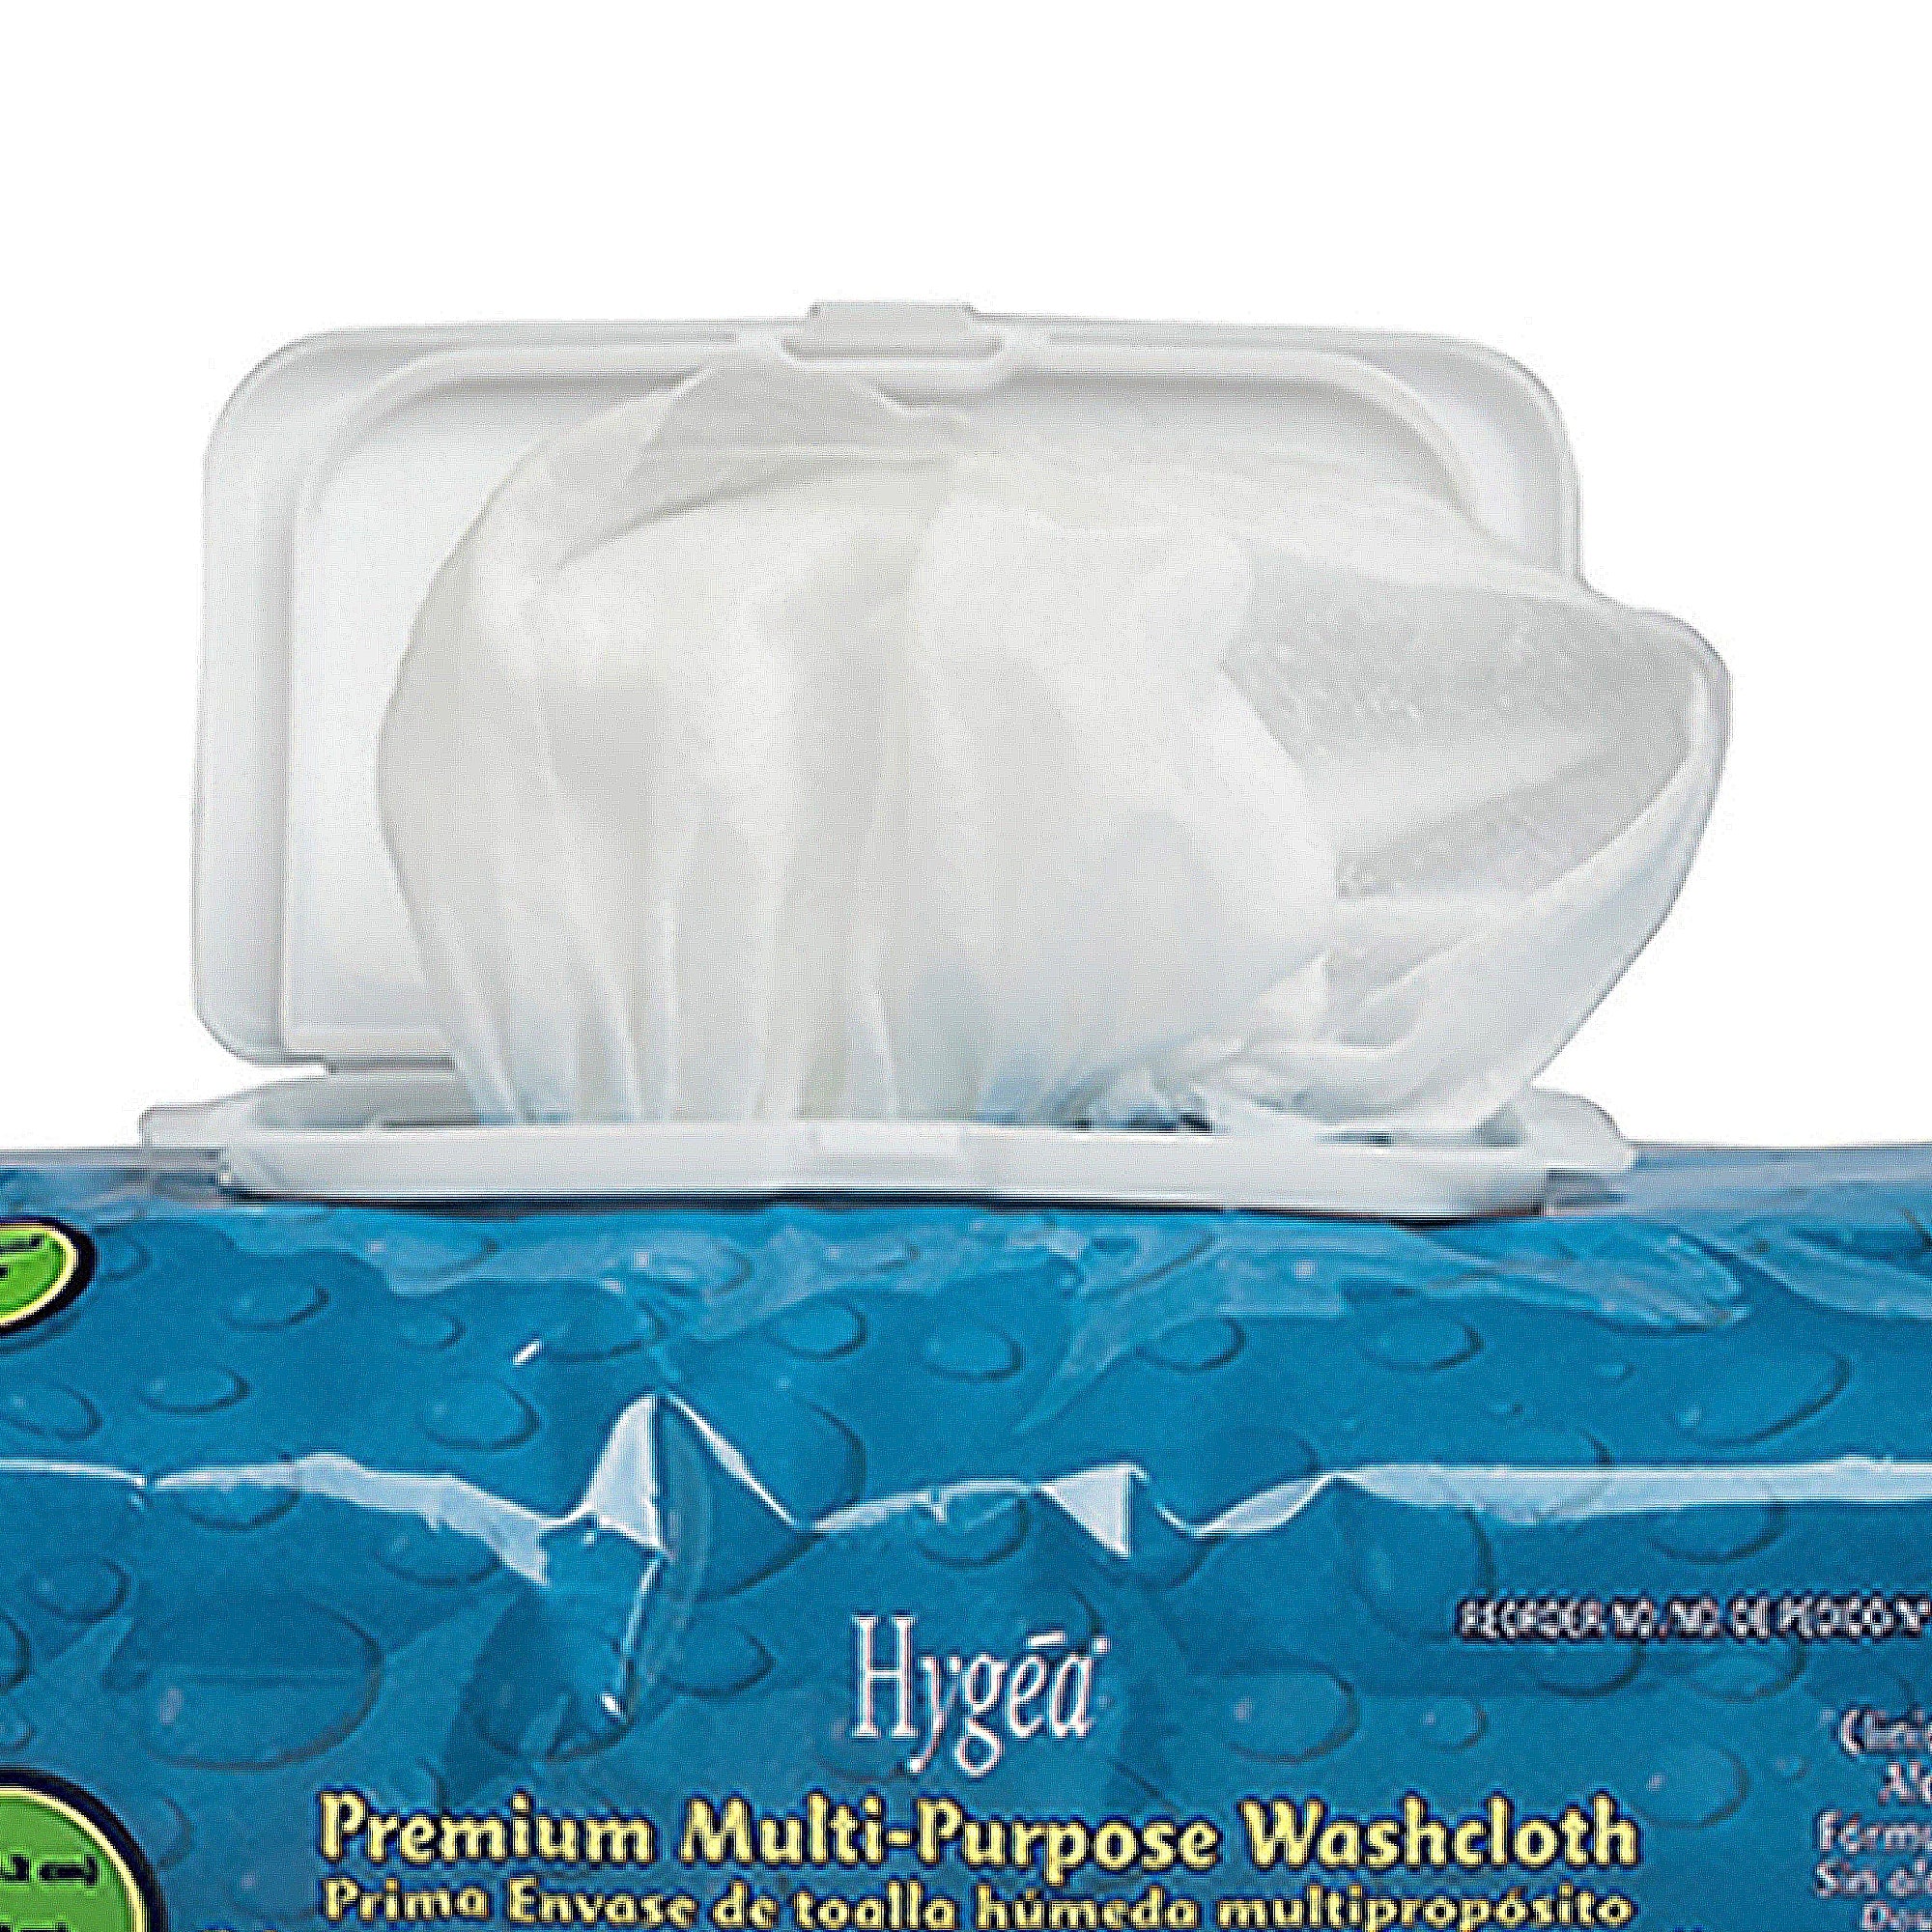 Personal Wipe Hygea Premium Soft Pack Aloe / Vitamin E Scented 60 Count